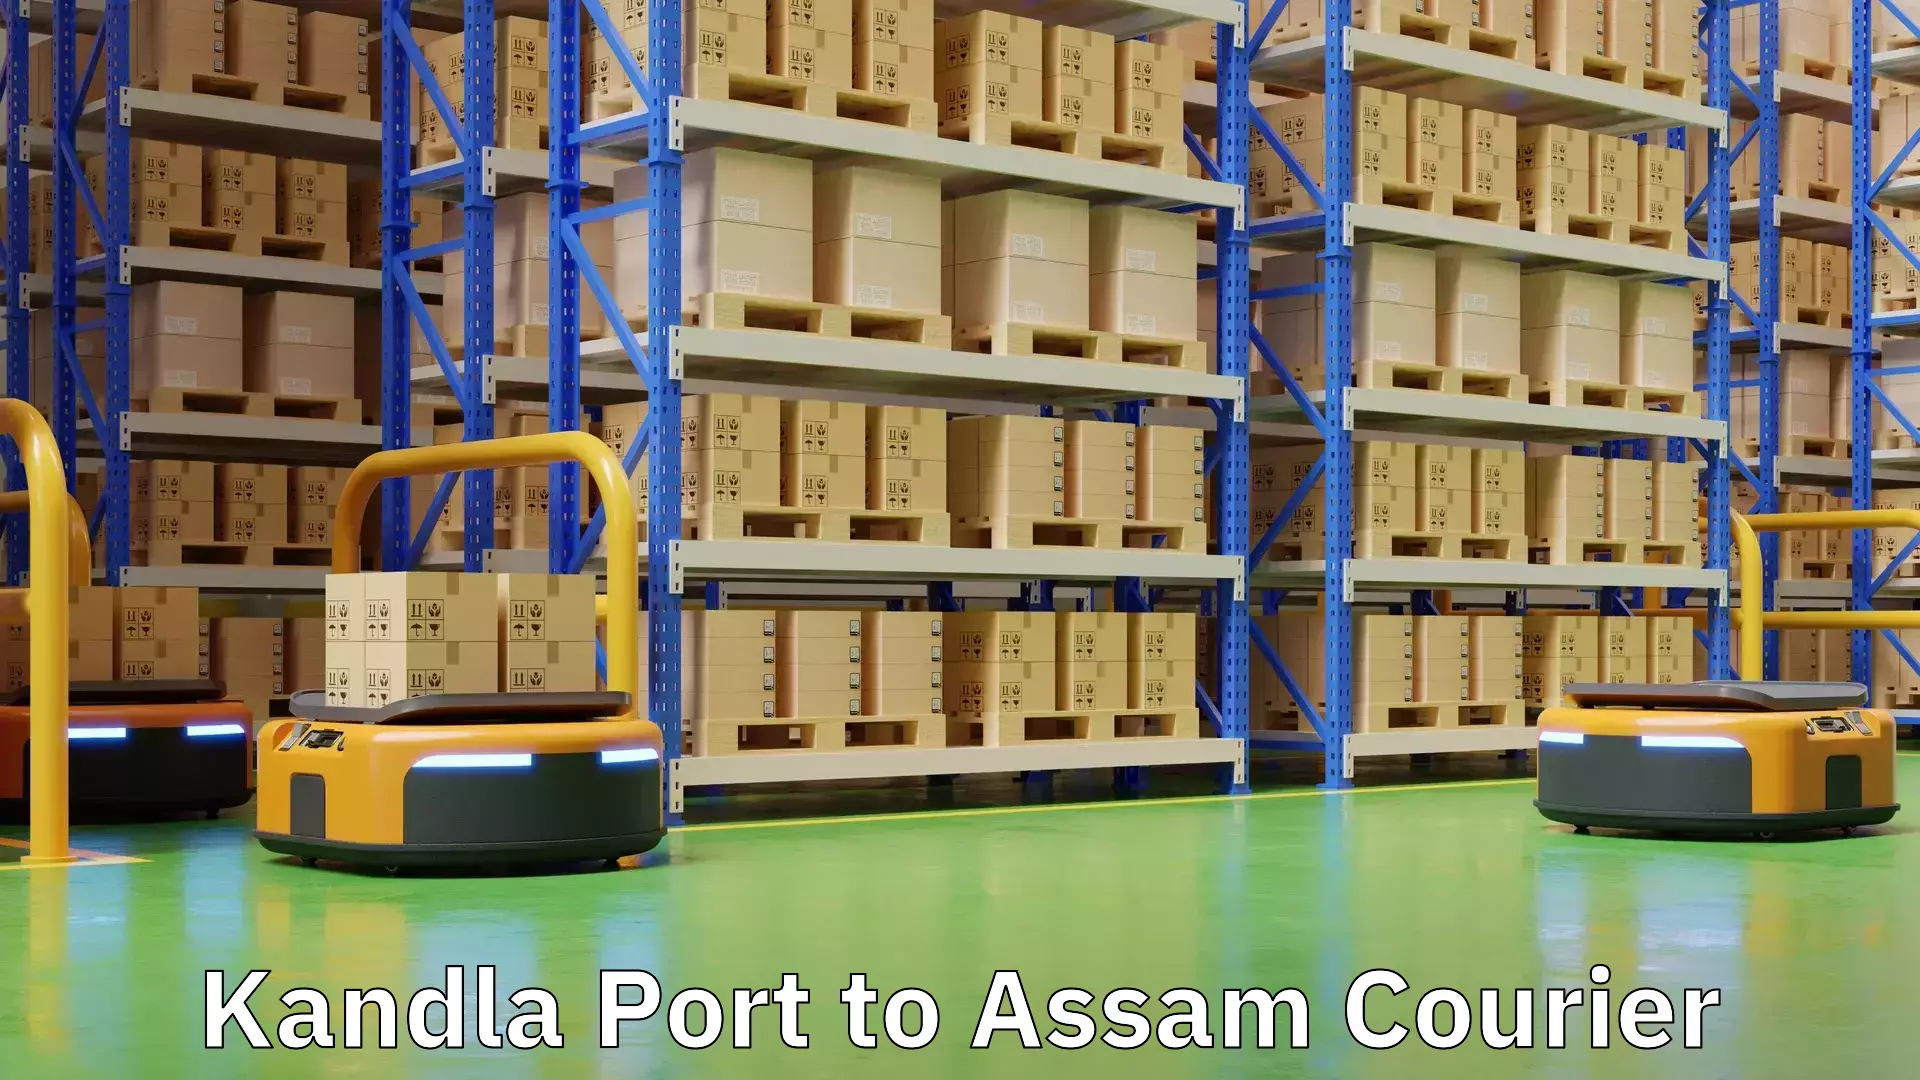 Doorstep delivery service Kandla Port to Assam